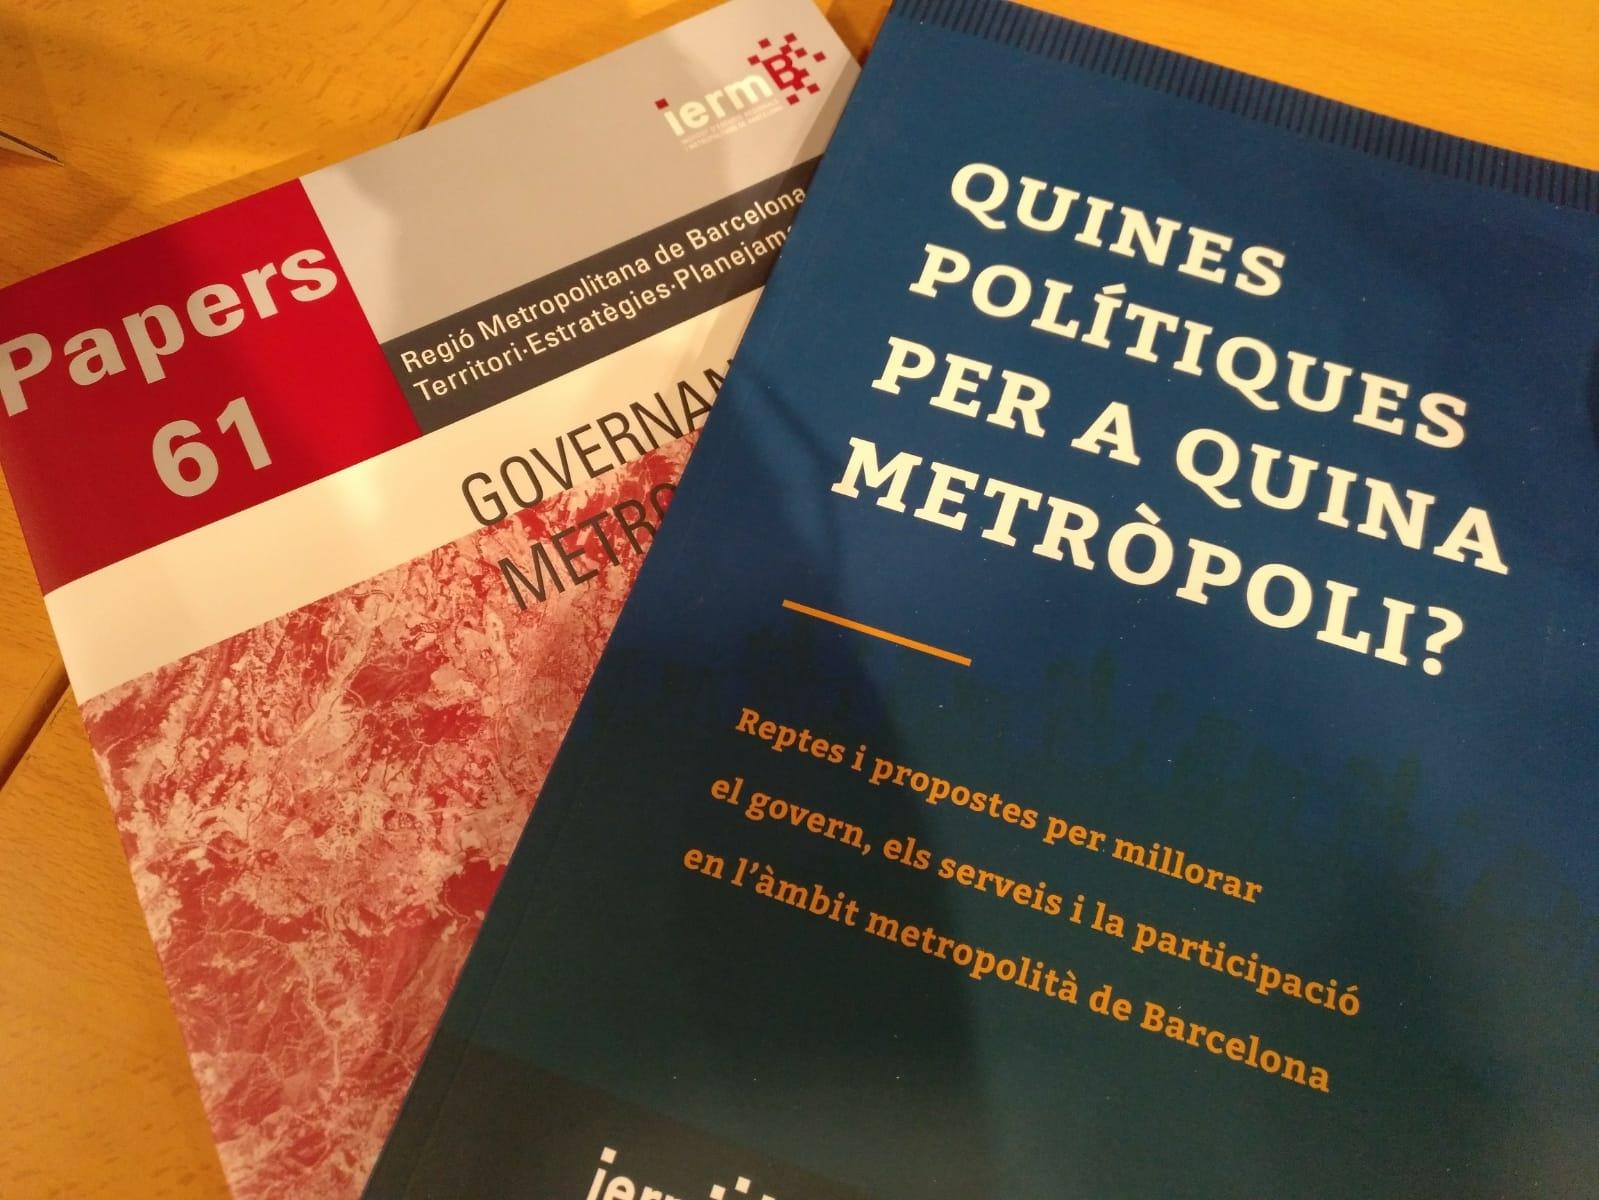 Les dues publicacions sobre governança metropolitana